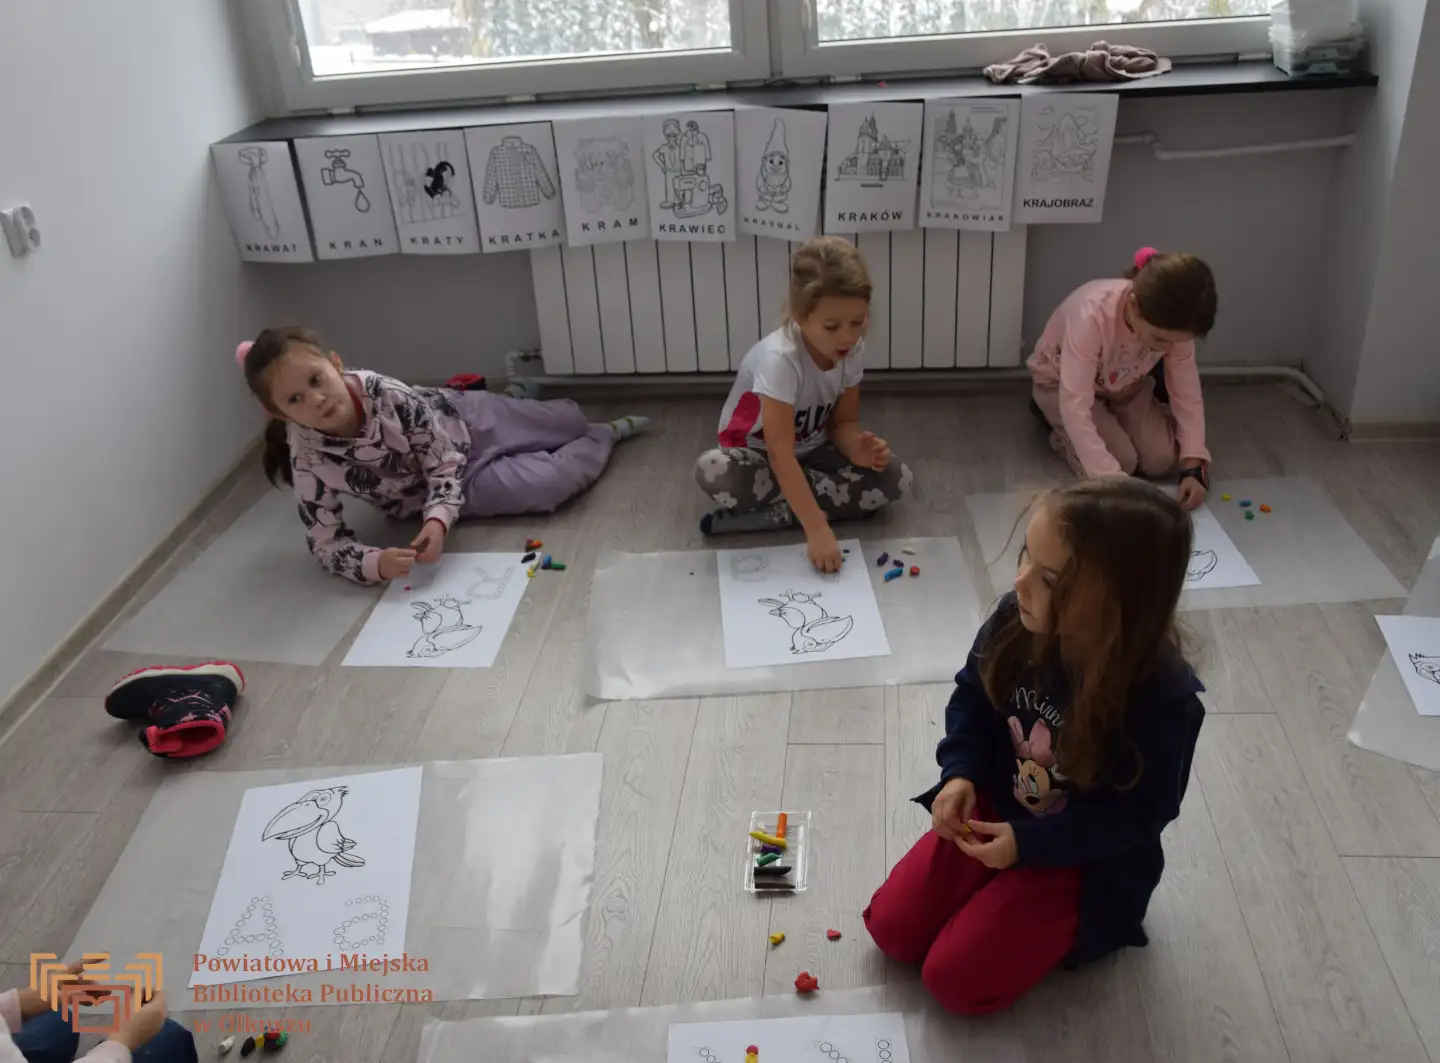 Zdjęcie przedstawia grupę dzieci, które siedzą na podłodze. Przed dziećmi znajdują się kartki z kolorowanką w kształcie papugi oraz liter K, A. Dzieci przyklejają plastelinę do obrazków.